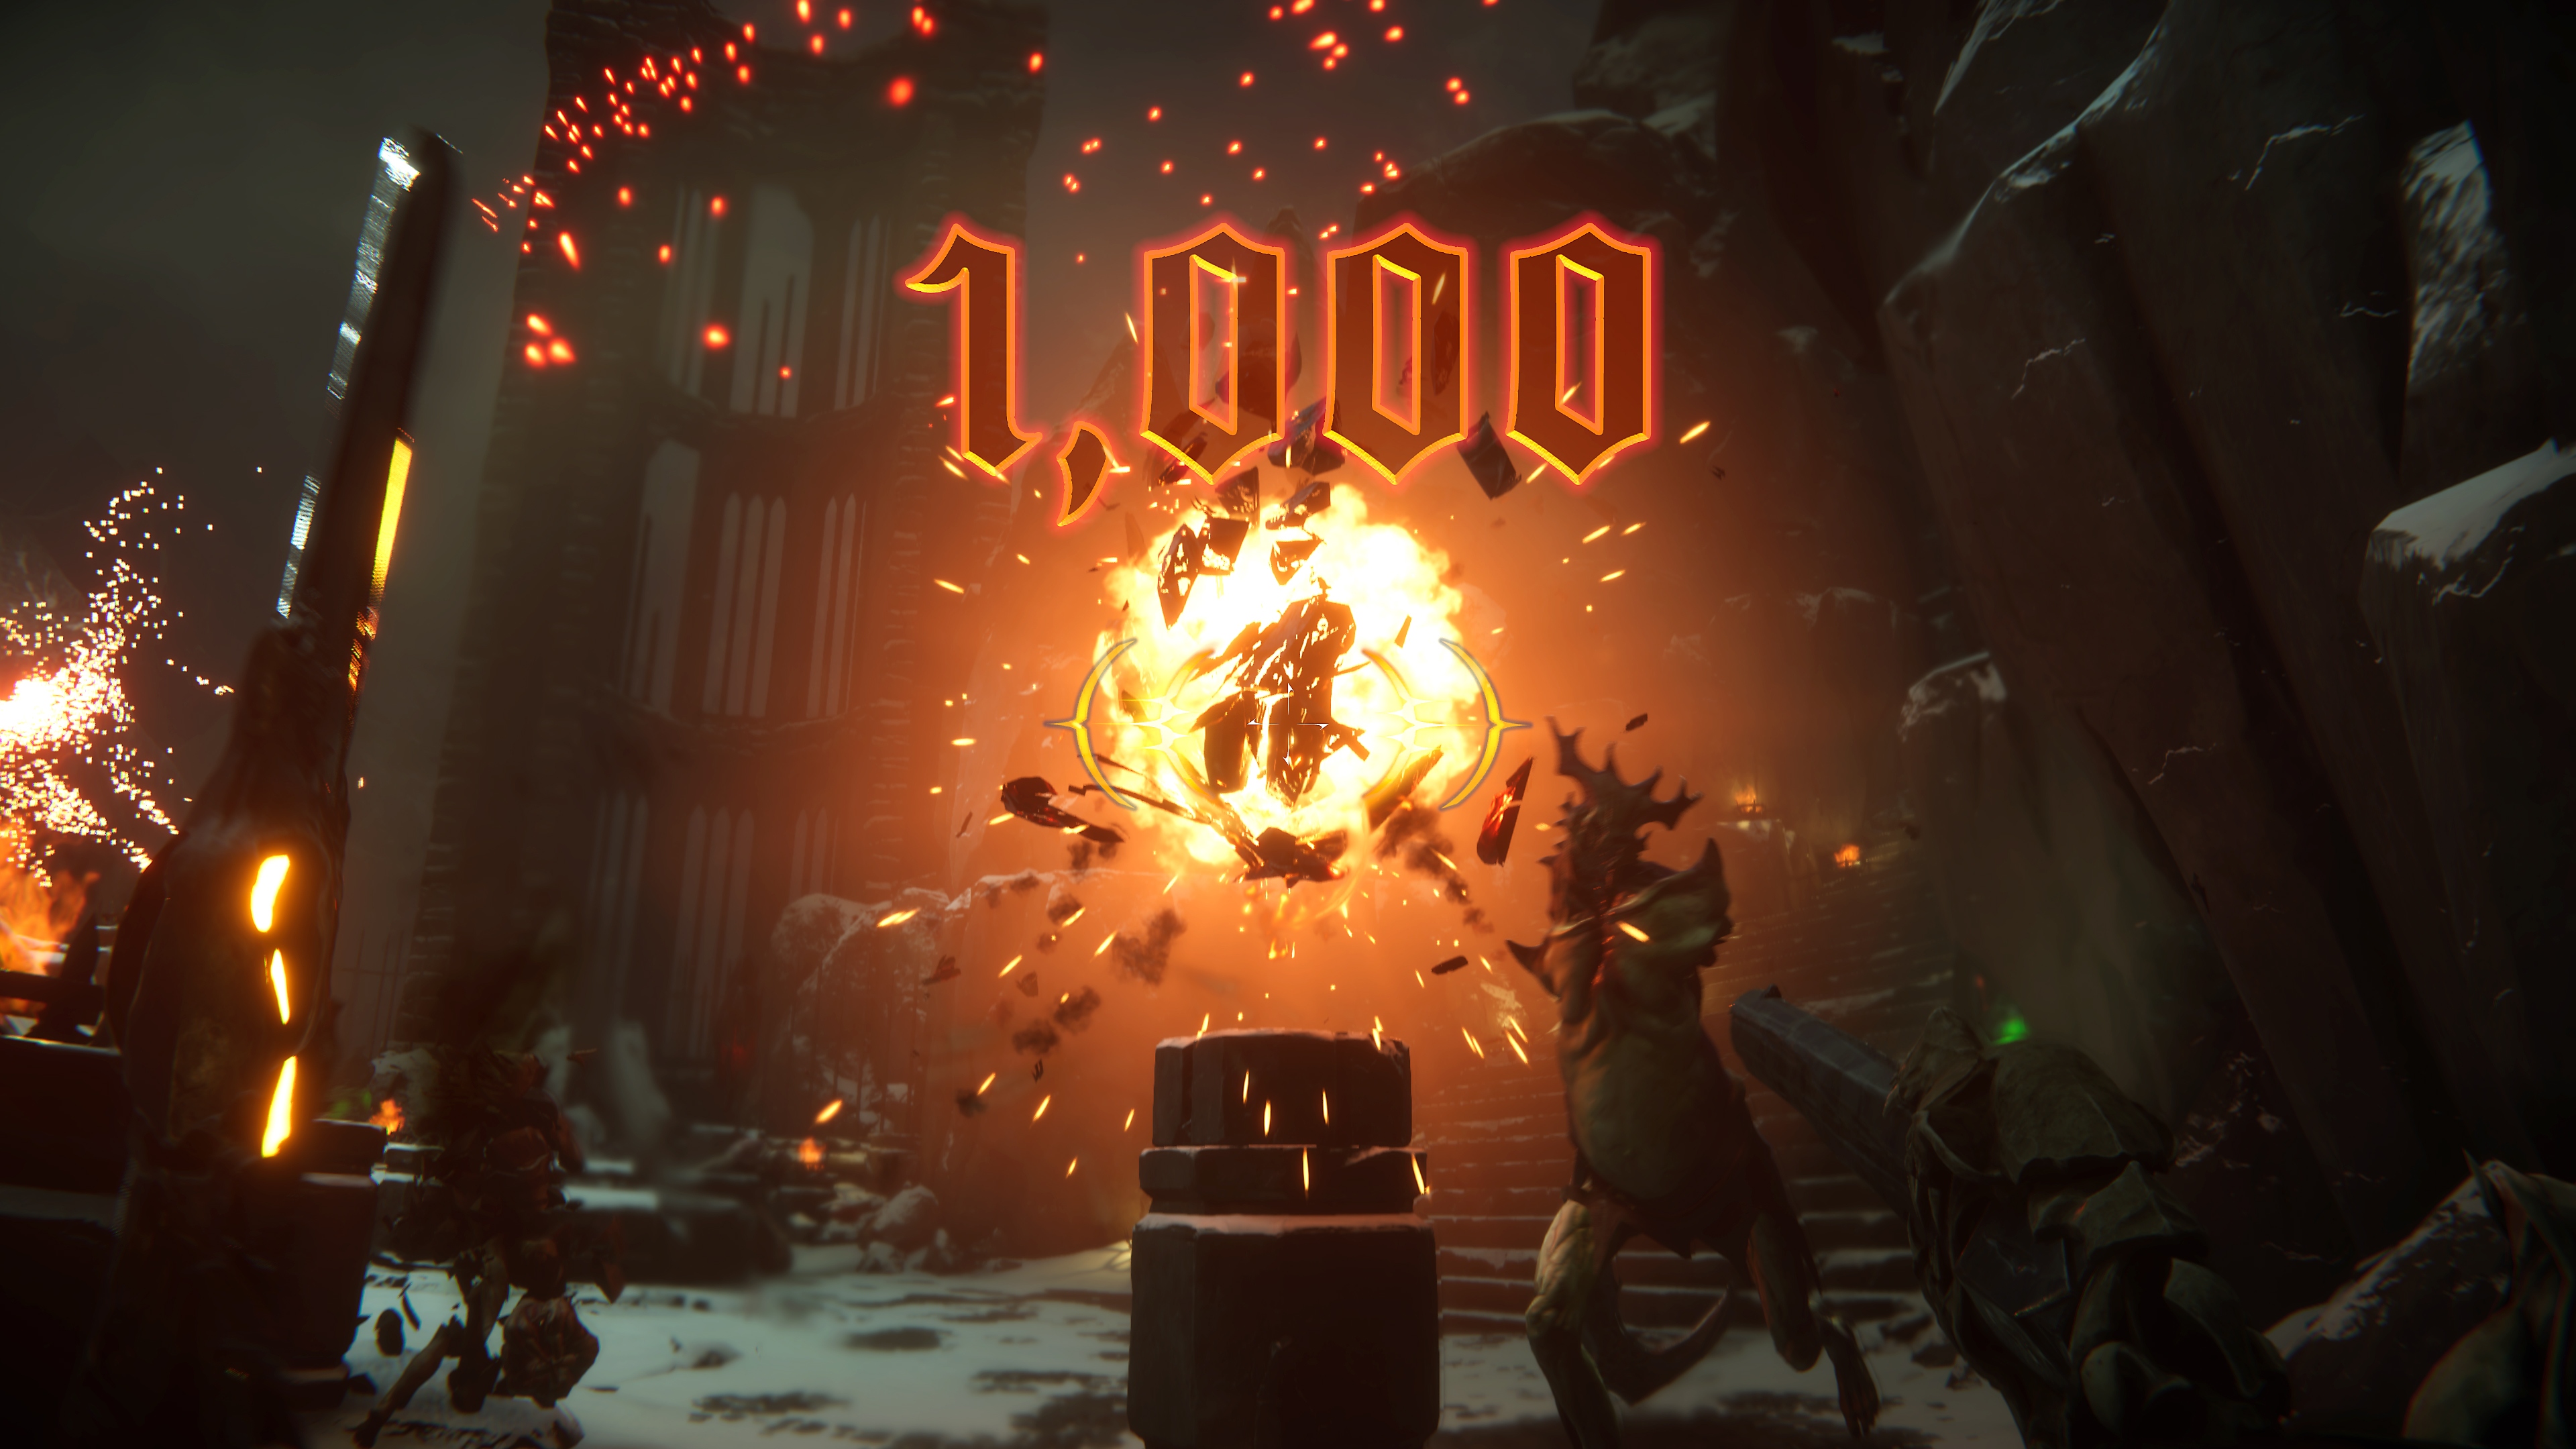 Captura de pantalla de Metal Hellsinger que muestra una gran explosión en el centro y una puntuación de “1000” en pantalla.